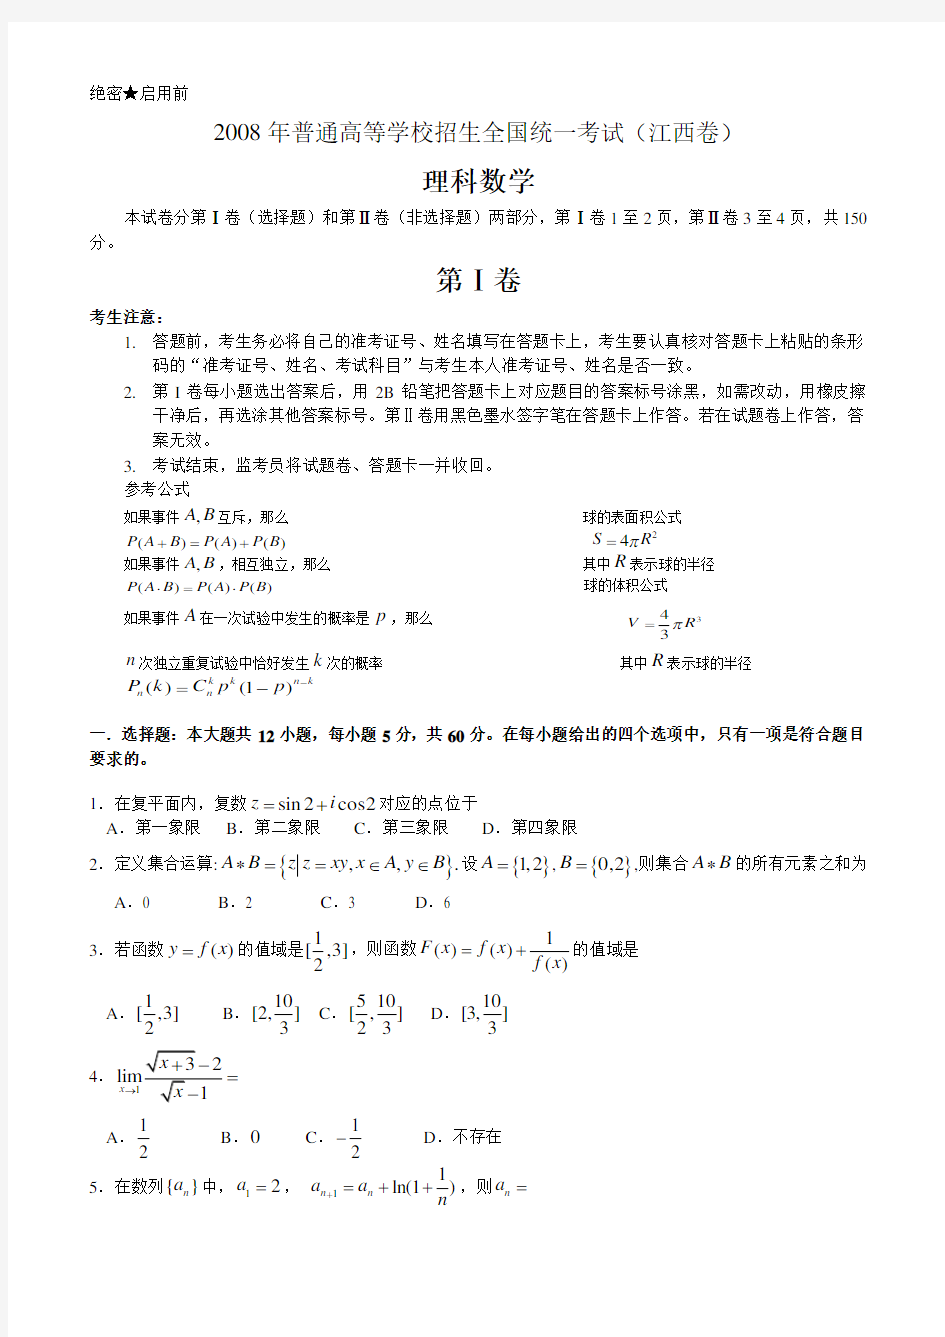 2008高考江西数学理科试卷含详细解答(全word版)